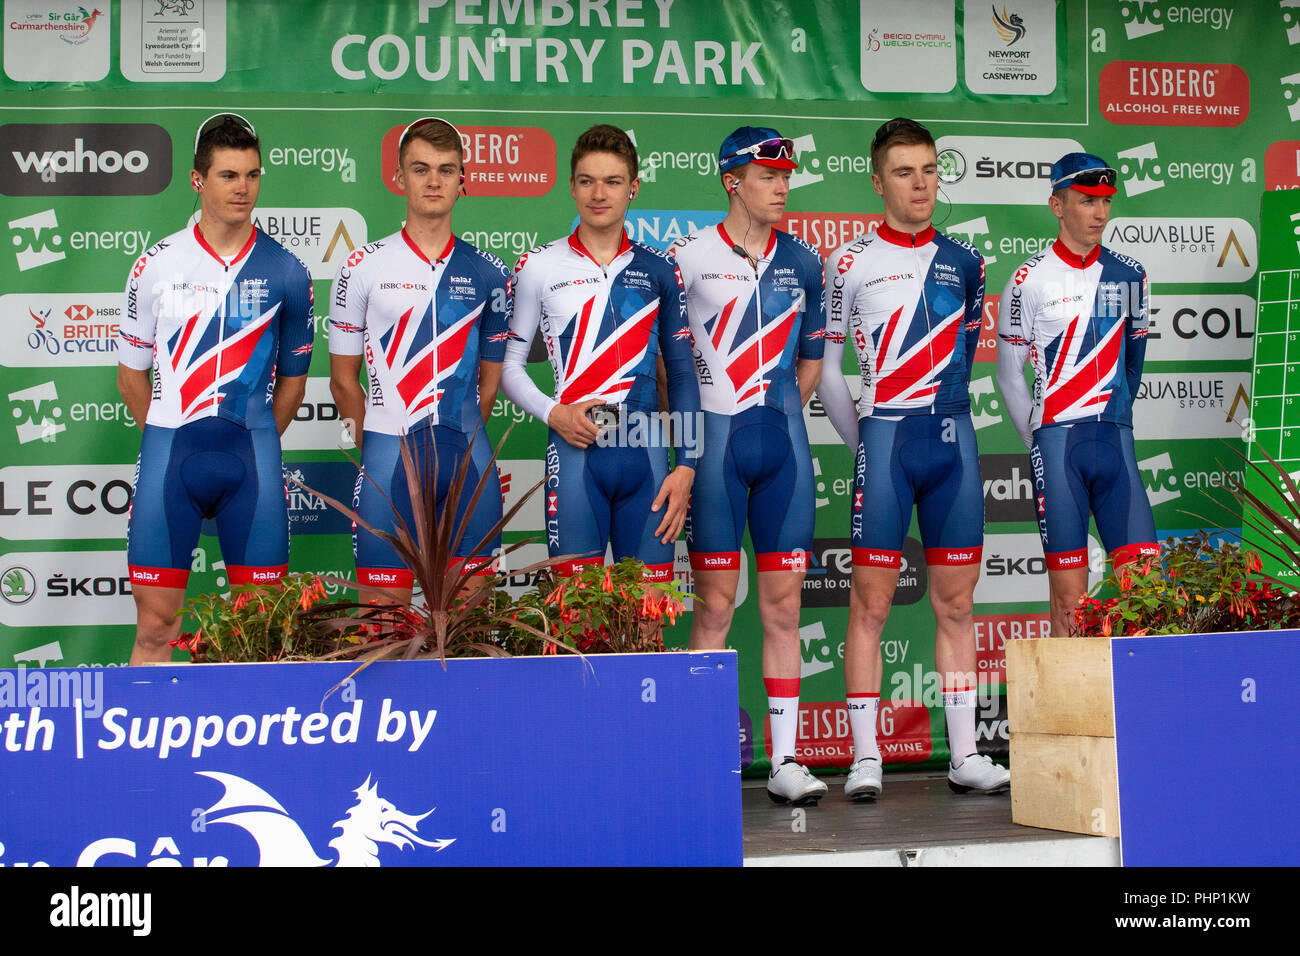 La Gran Bretagna professional cycling team sono introdotti prima dell' inizio della fase 1 del tour della Gran Bretagna corsa in bicicletta a partire a Pembrey Country Park. Foto Stock